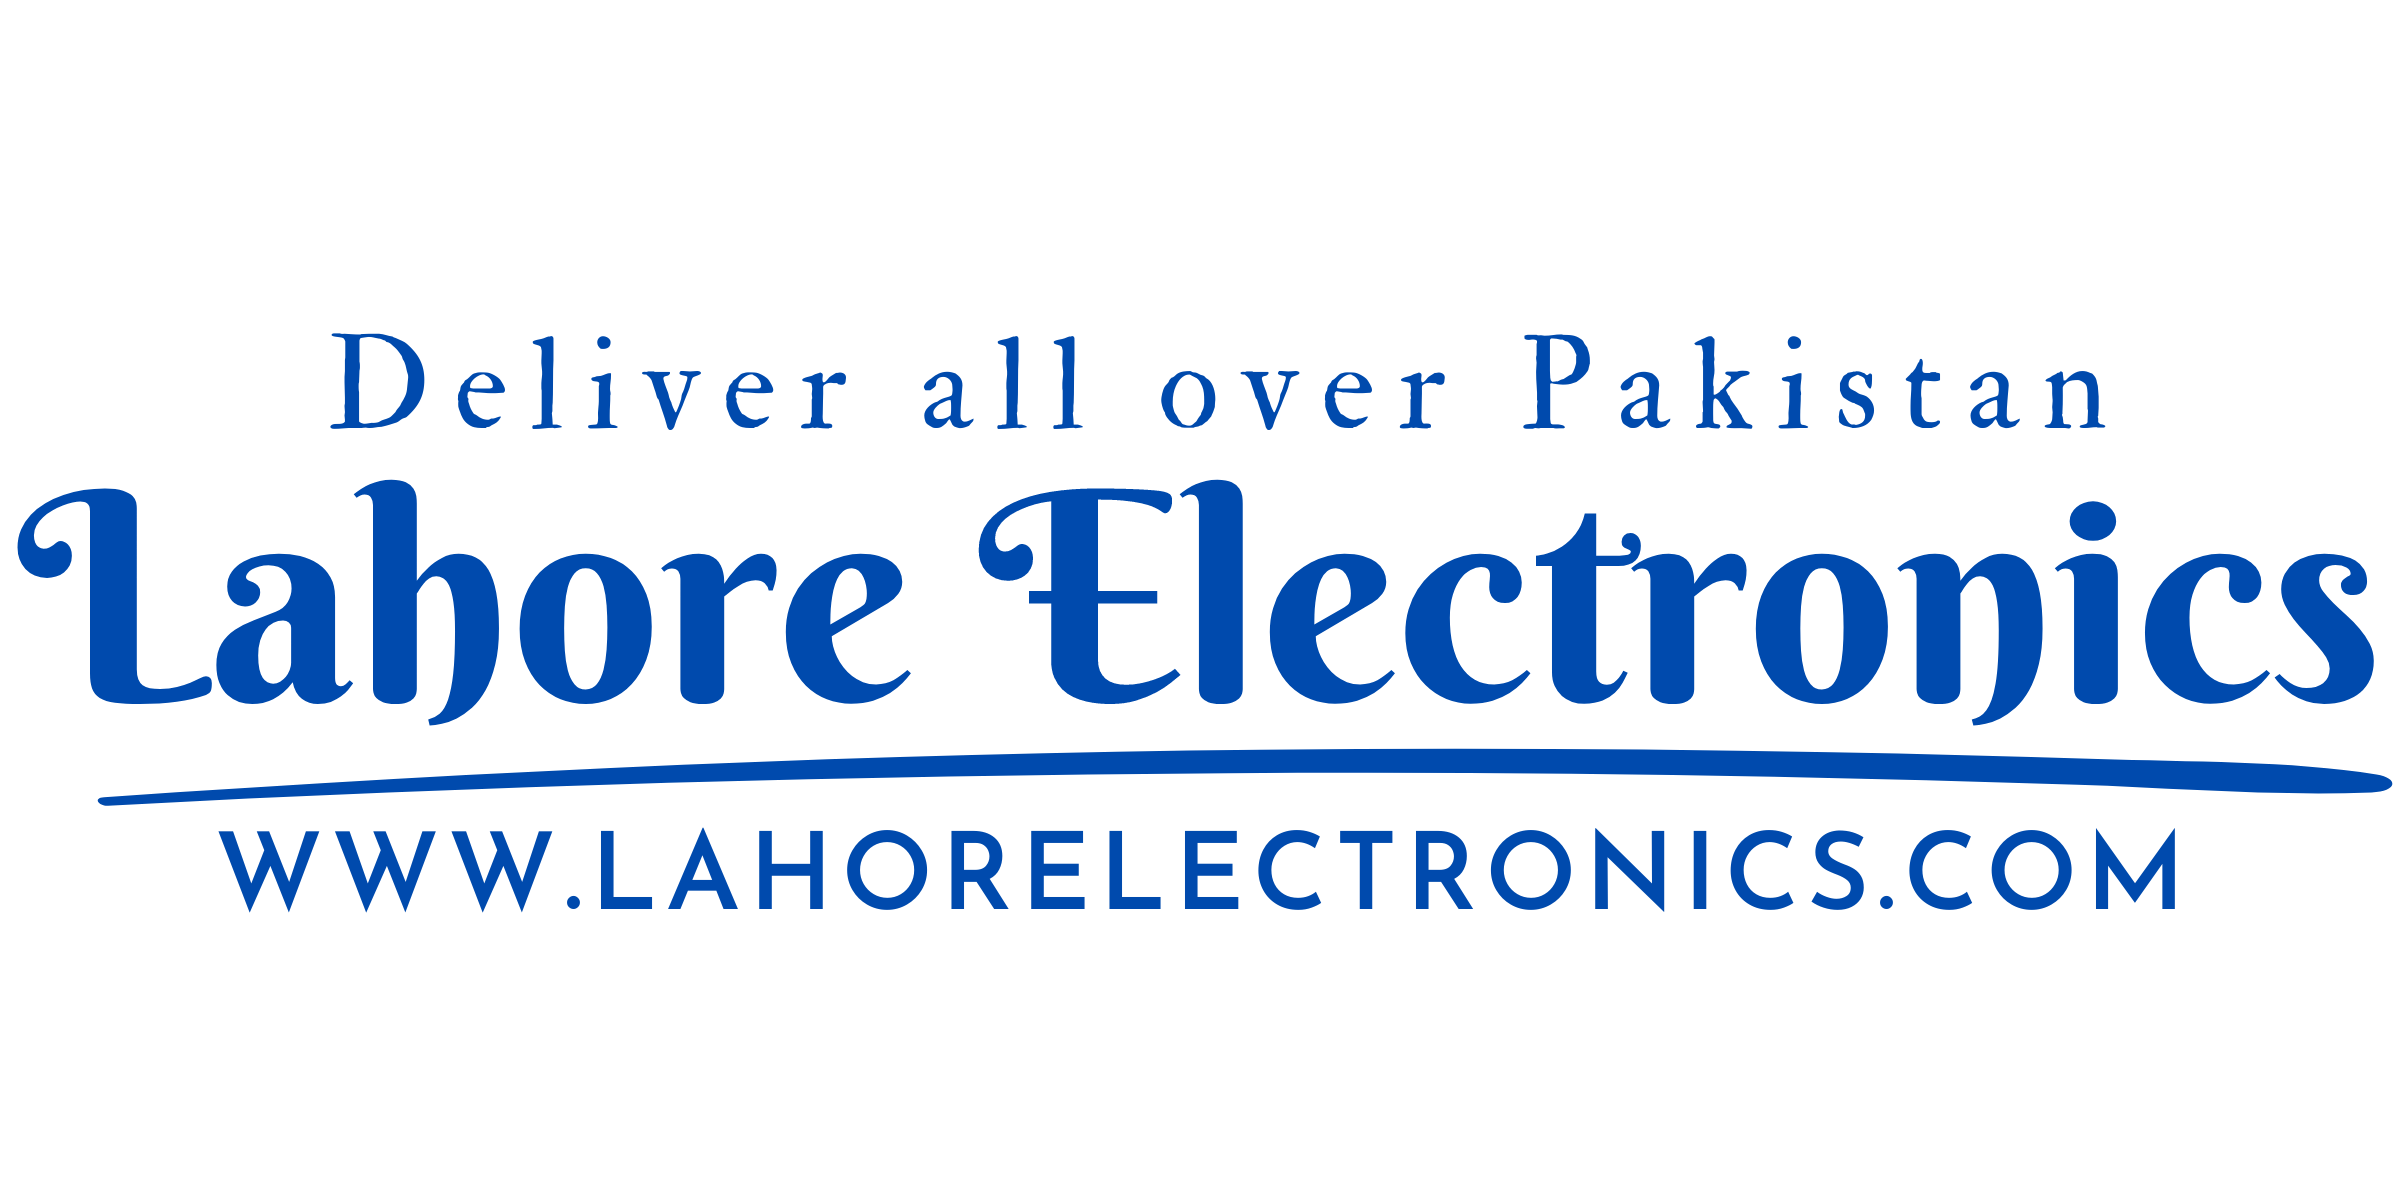 Haier eStore Lahore Electronics Haier online outlet